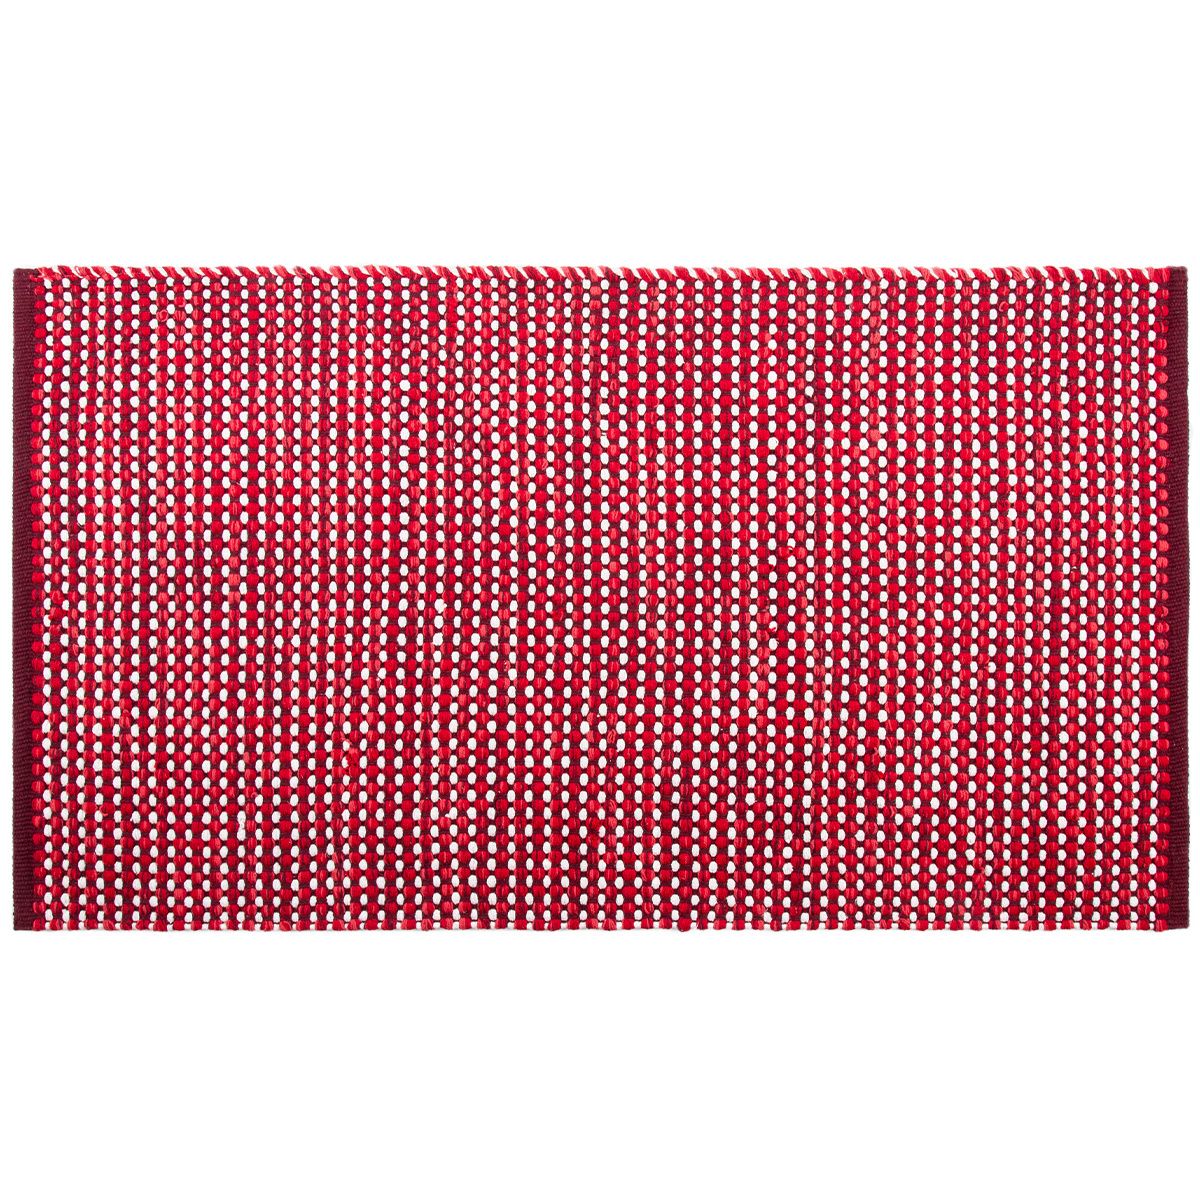 BO-MA Trading Kusový bavlněný koberec Elsa červená, 70 x 120 cm - 4home.cz